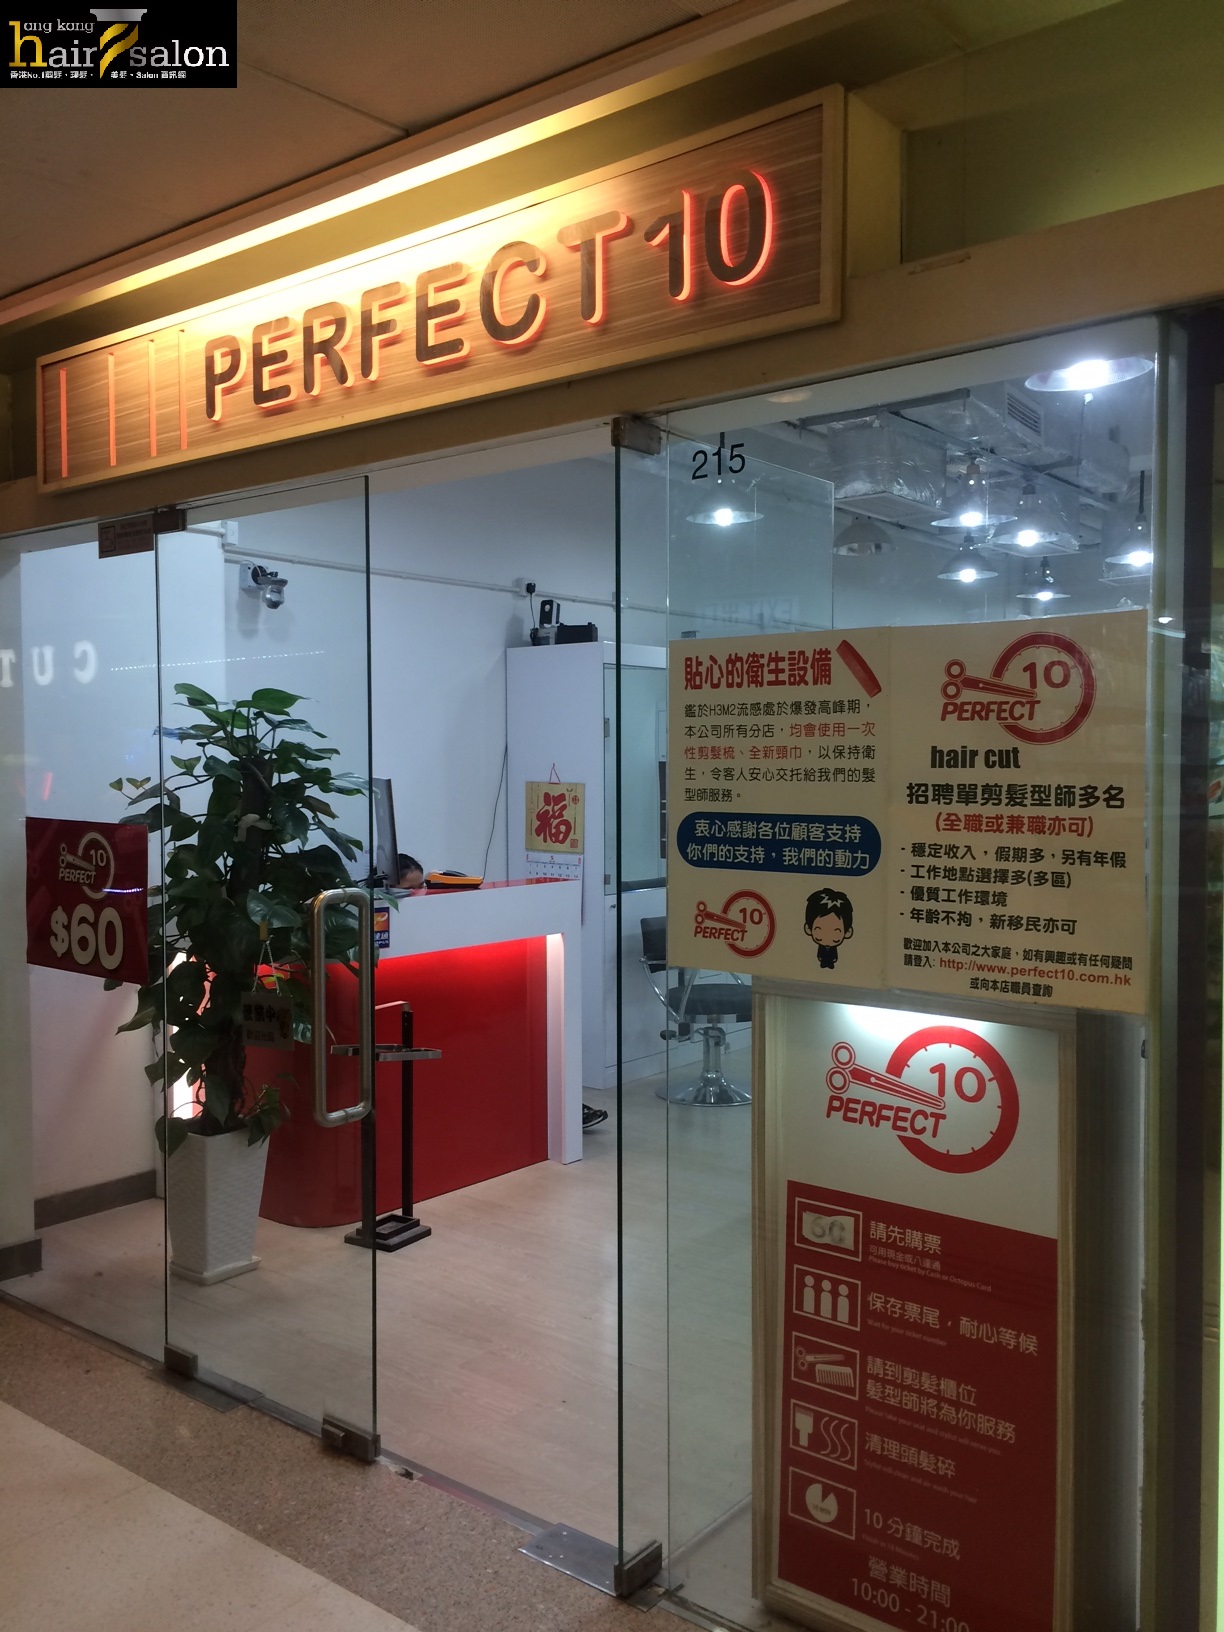 香港美髮網 HK Hair Salon 髮型屋Salon / 髮型師: Perfect 10 (何文田廣場)